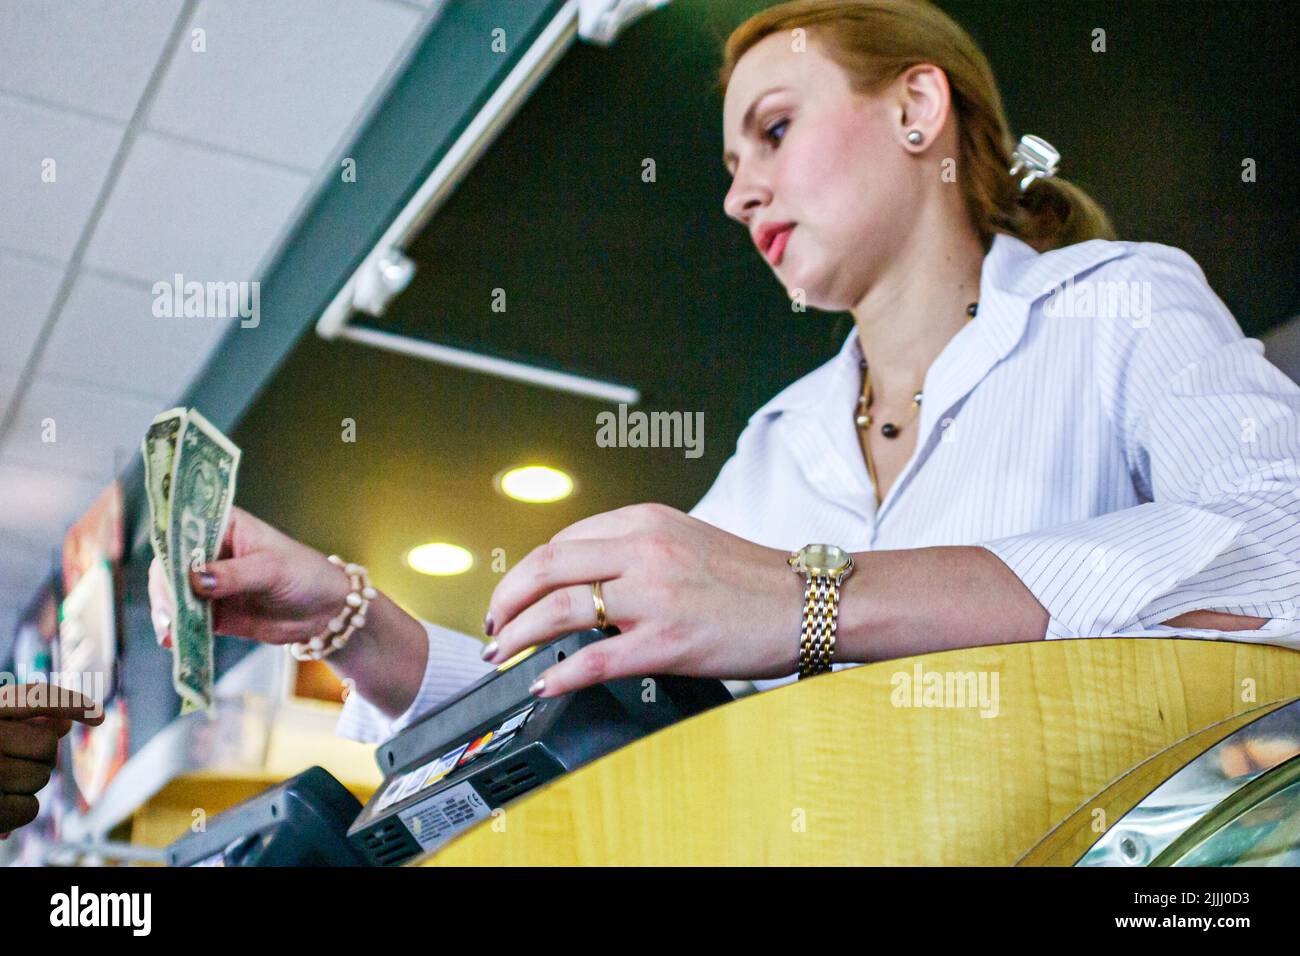 Miami Florida,Coral Gables,restaurant caissière hôtesse serveur adultes femme femmes femme femme,employé employés travailleurs travaillant de l'argent Banque D'Images